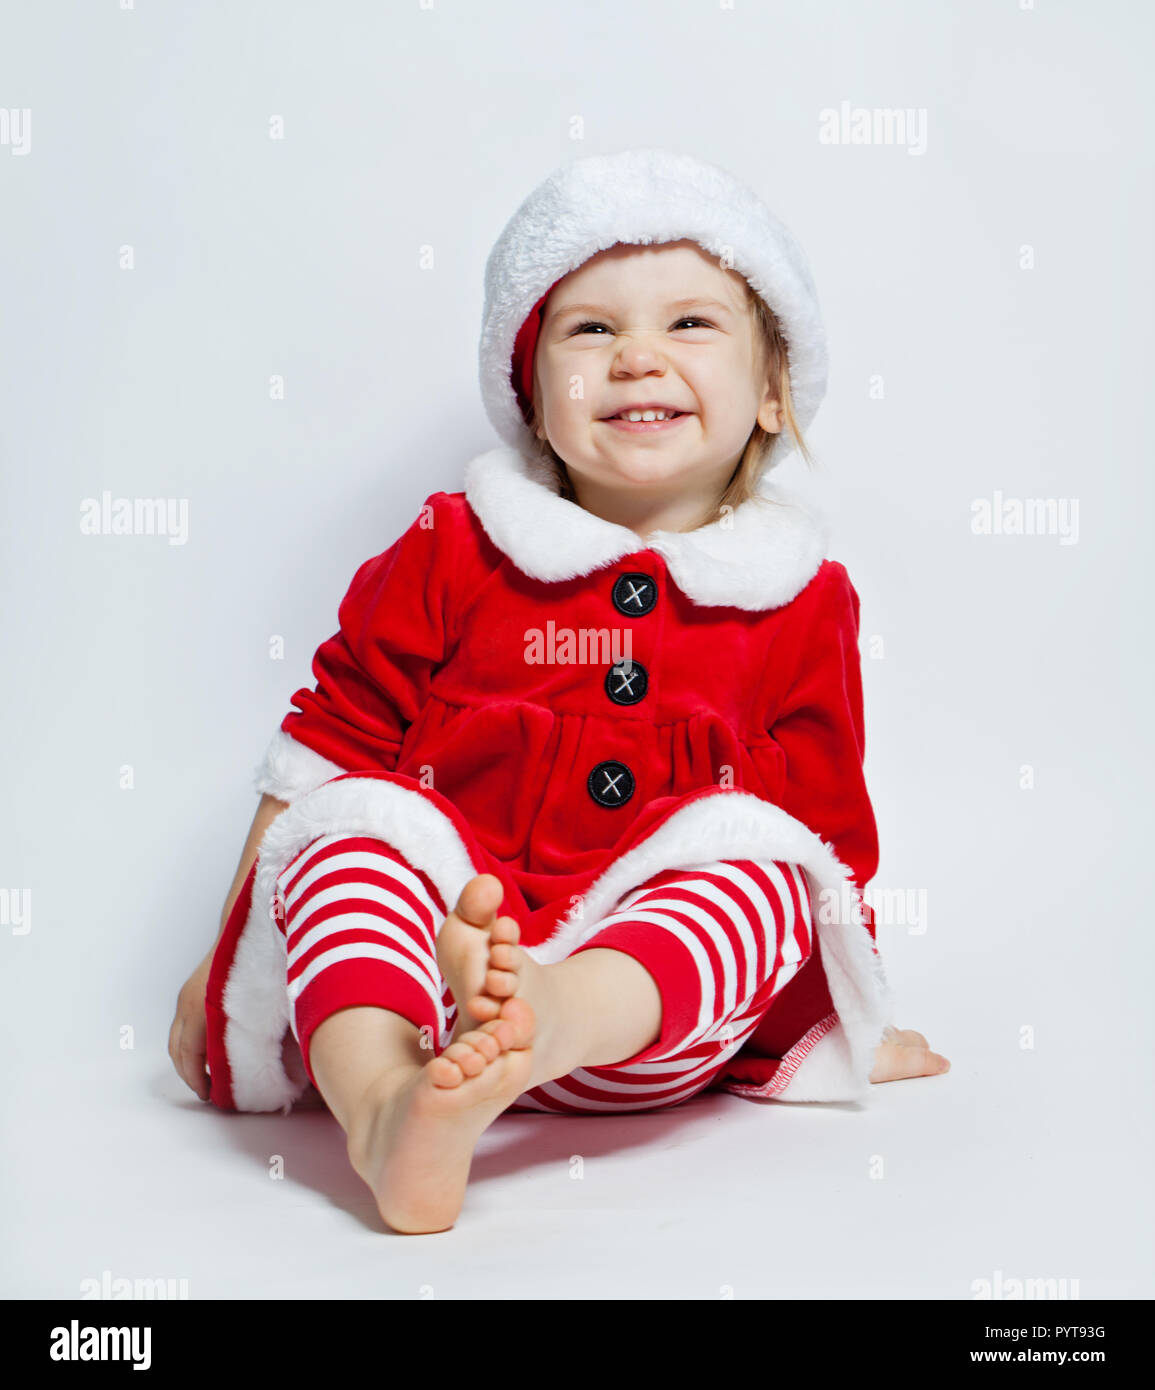 Christmas child wearing Santa hat sitting on white background Stock Photo